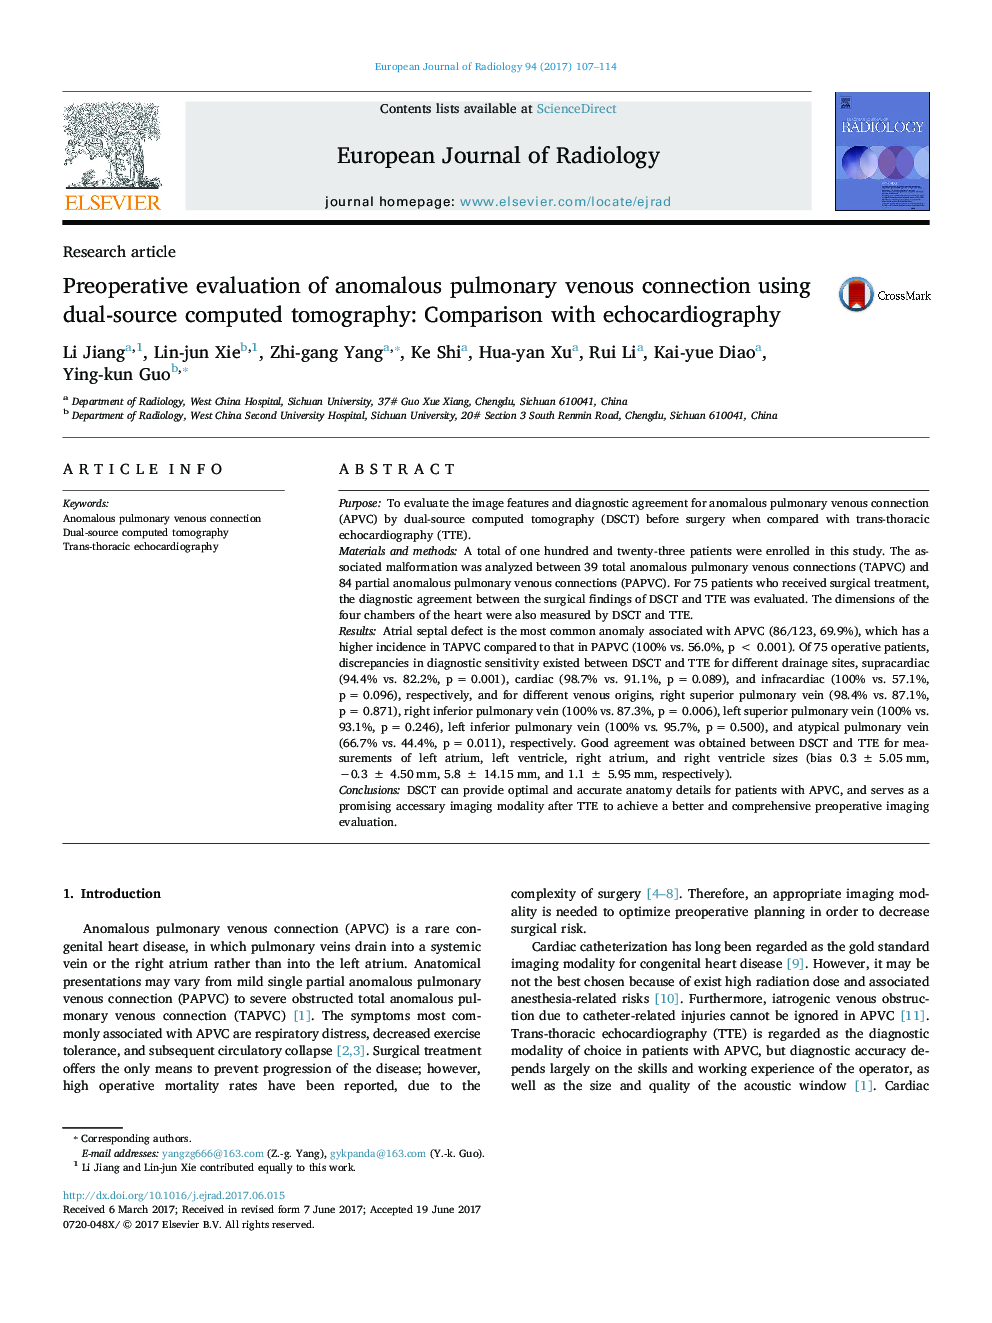 مقاله پژوهشی تعیین بازتوانی ارتباط اتصال وریدی غیرطبیعی با استفاده از توموگرافی کامپیوتری دوگانه: مقایسه با اکوکاردیوگرافی 